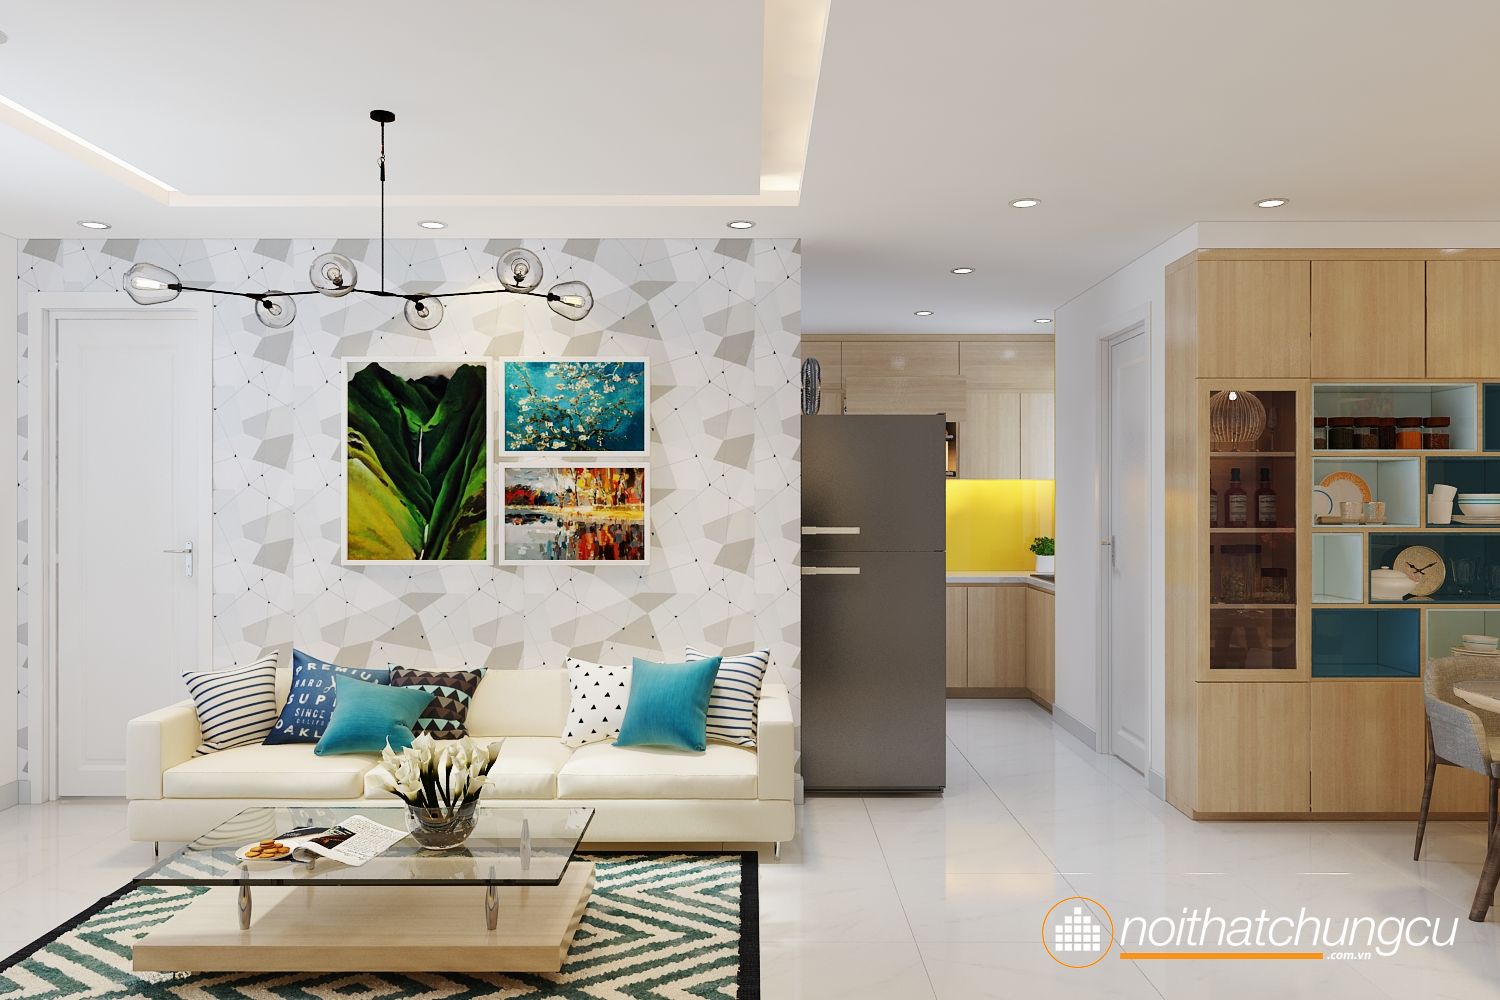 Thiết kế nội thất cho căn hộ chung cư 60m2 thật đẹp mắt và đầy tính thẩm mỹ. Với sự tận tâm và sáng tạo của chúng tôi, không gian sống của bạn sẽ tựa như một tác phẩm nghệ thuật khiến mọi người đều phải ngưỡng mộ.